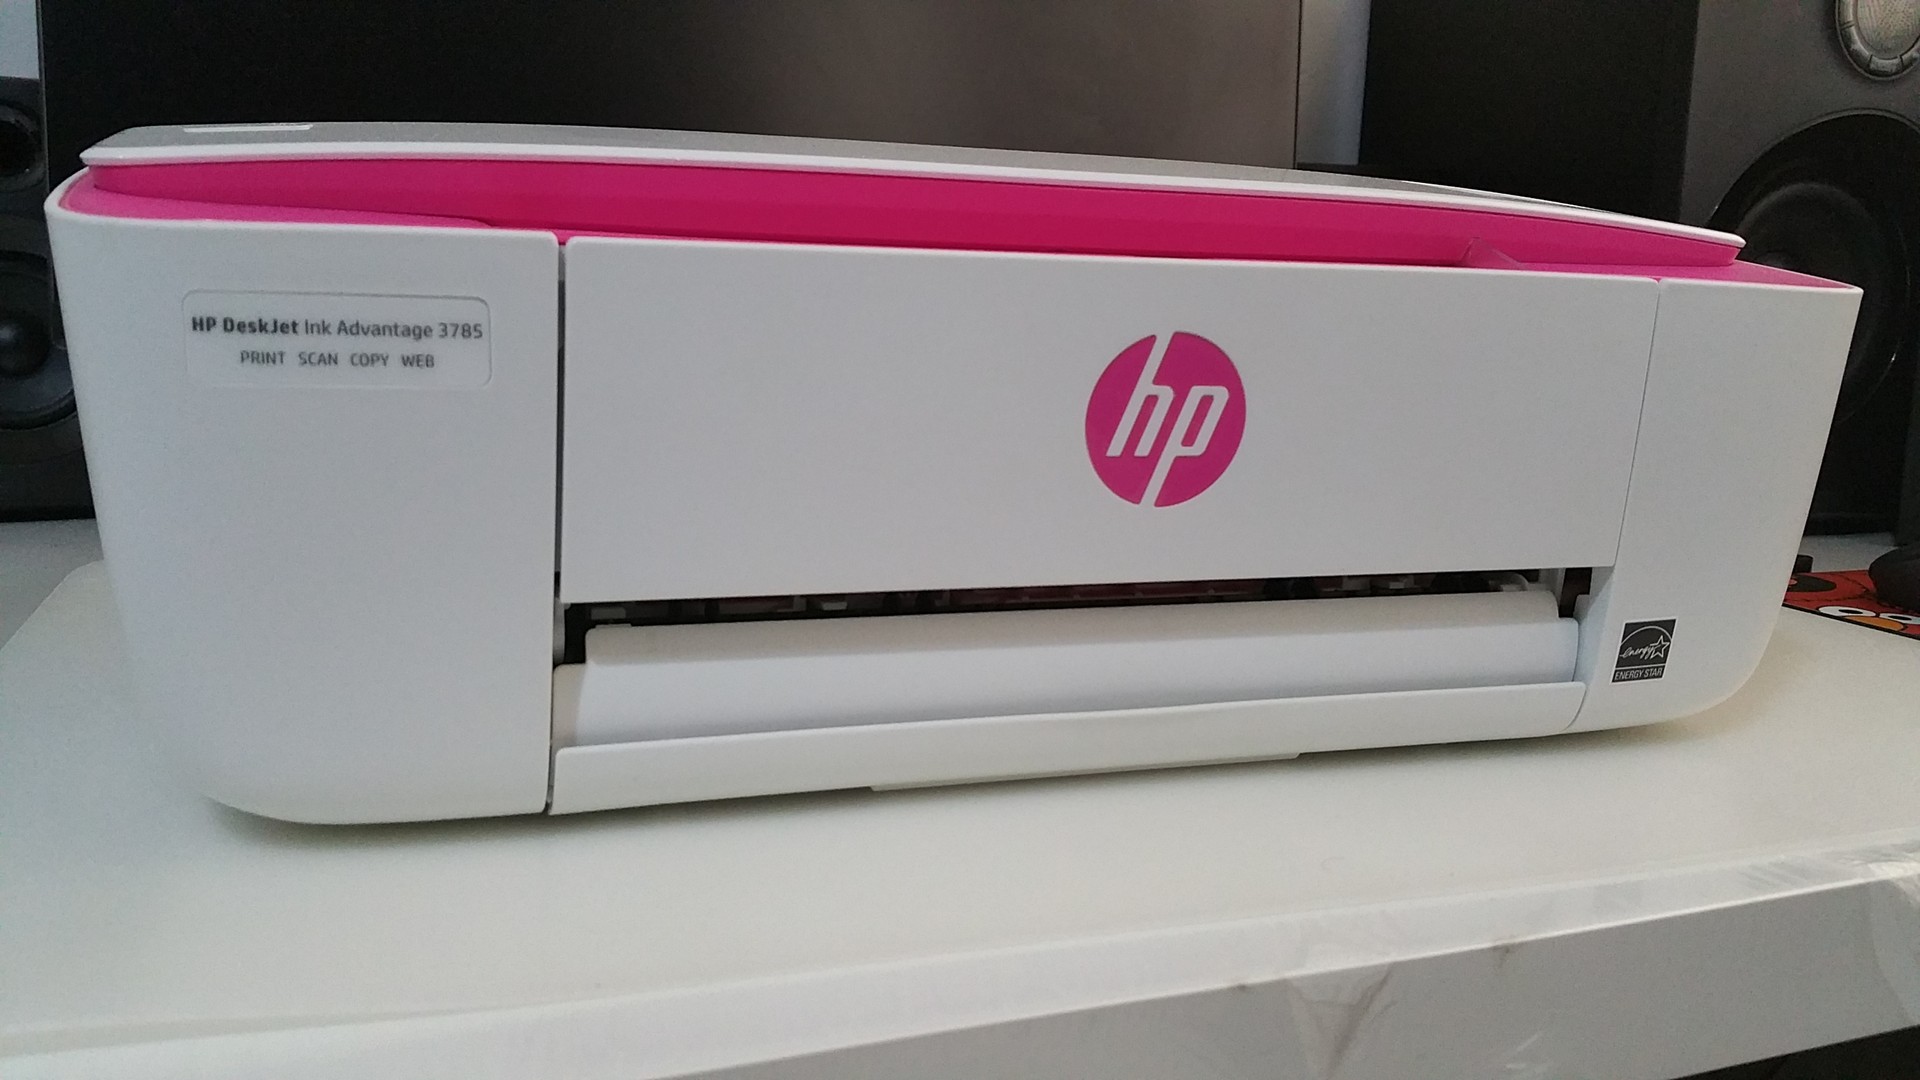 impresoras y scanners - HP Deskjet 3700 series 